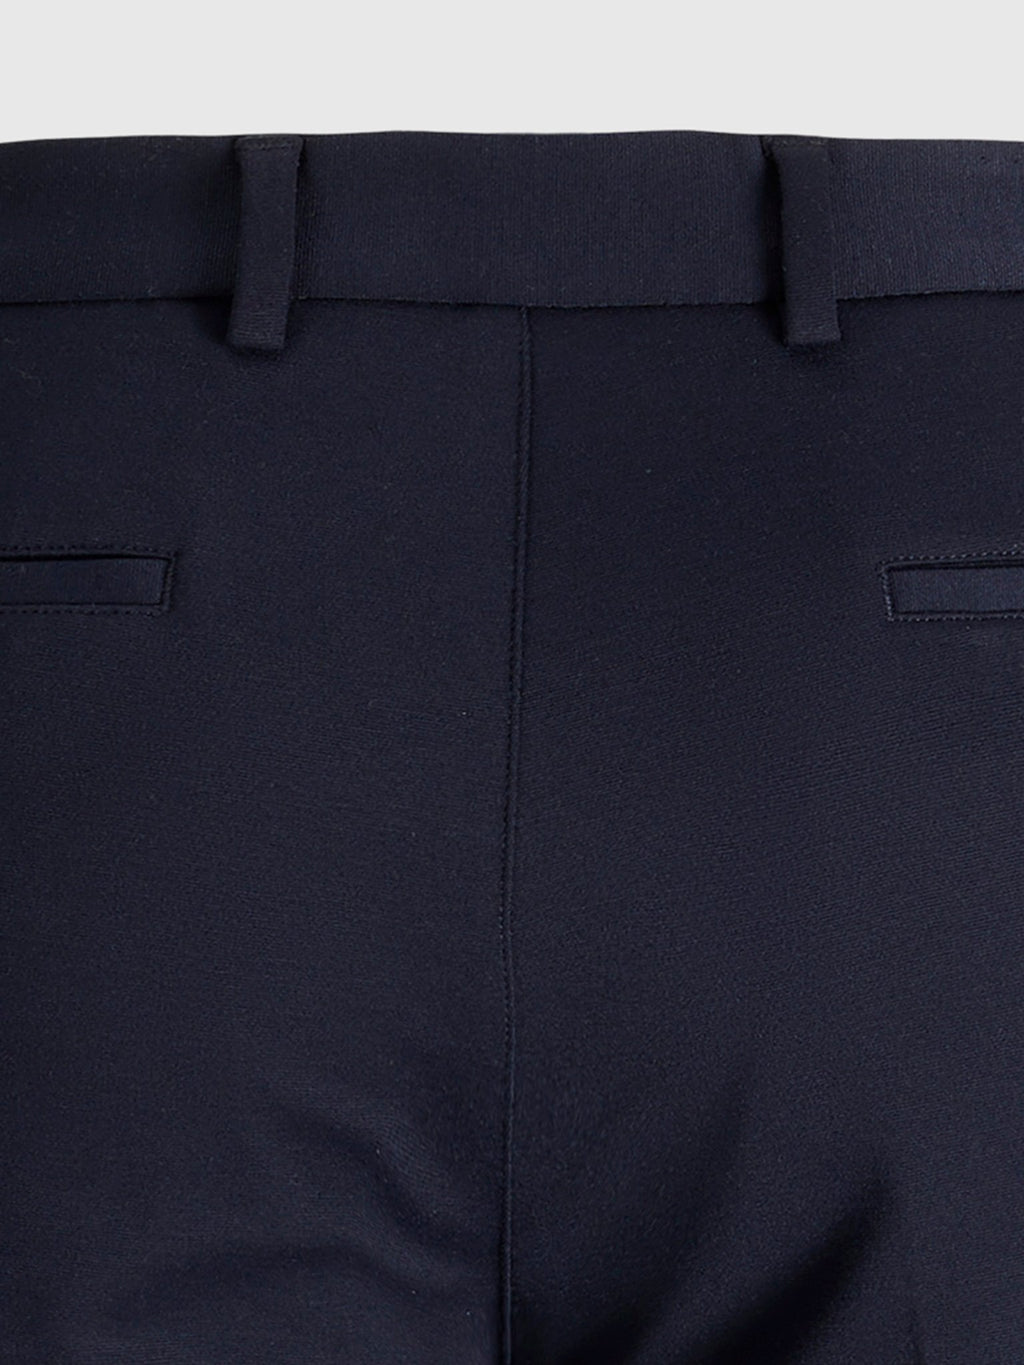 原始性能裤（常规） - 海军